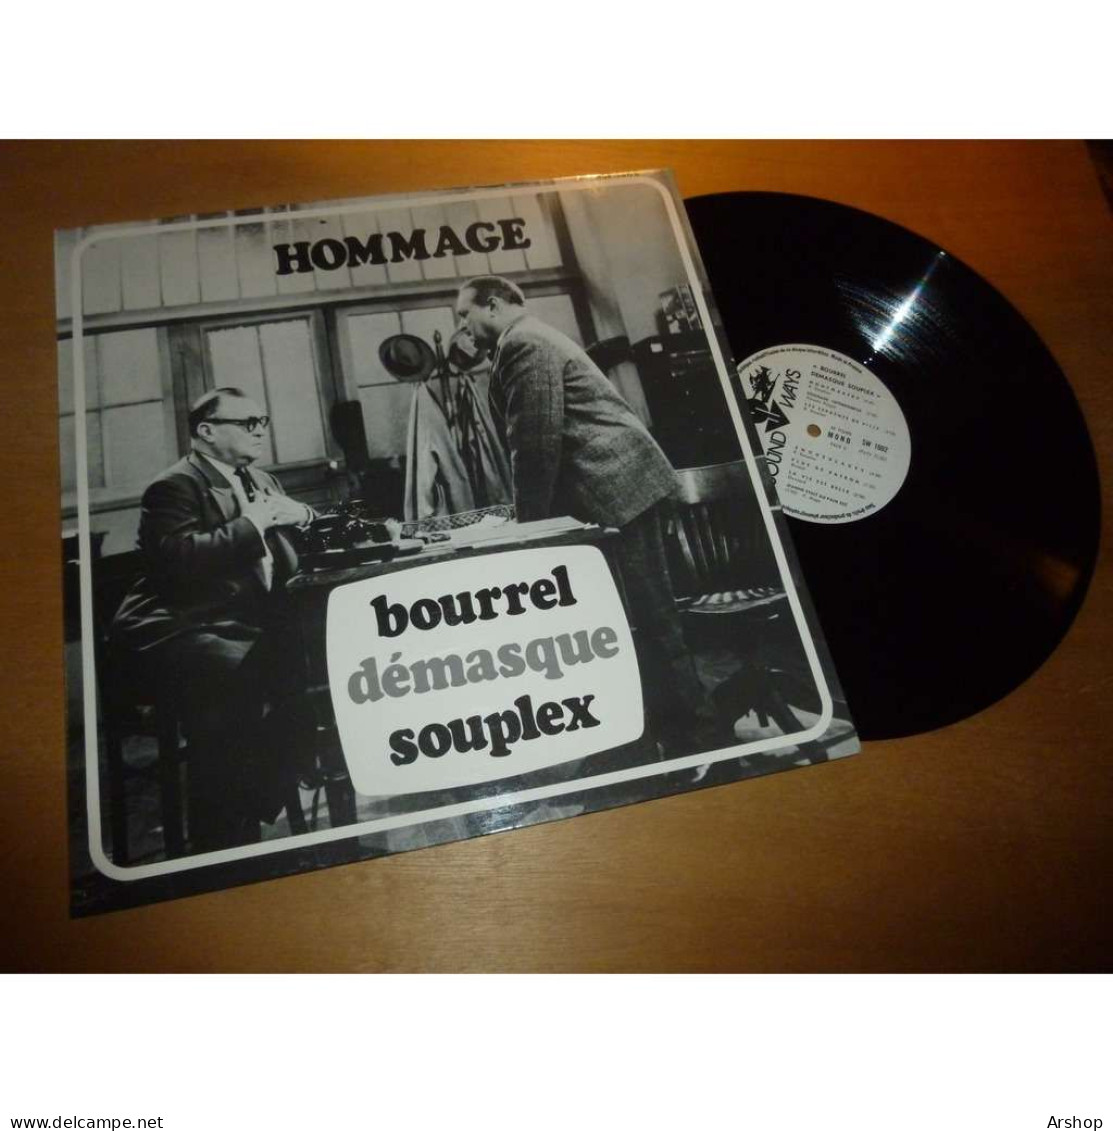 RAYMOND SOUPLEX Hommage - Bourrel Démasque Souplex + Lettre De PIERRETTE SOUPLEX - SOUND WAYS Lp 1972 - Comiche